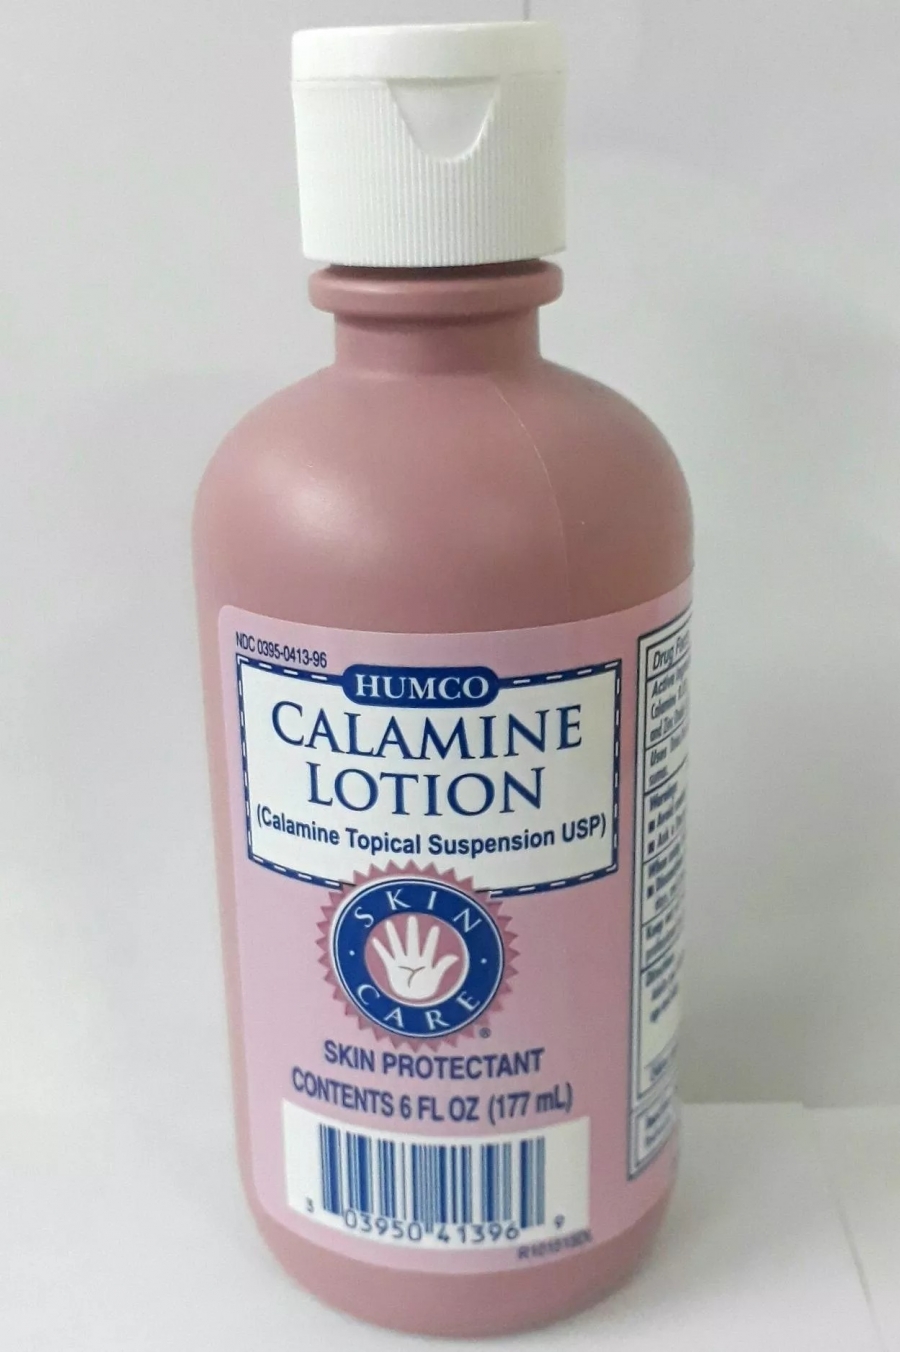 Tuy nhiên, các loại mỹ phẩm chứa calamine có thể khiến cho da bị khô và nổi mụn nhiều hơn nếu như bôi lâu dài. Nói chung, bạn không nên sử dụng sản phẩm này mà thay vào đó là dùng kem lót chuyên nghiệp.